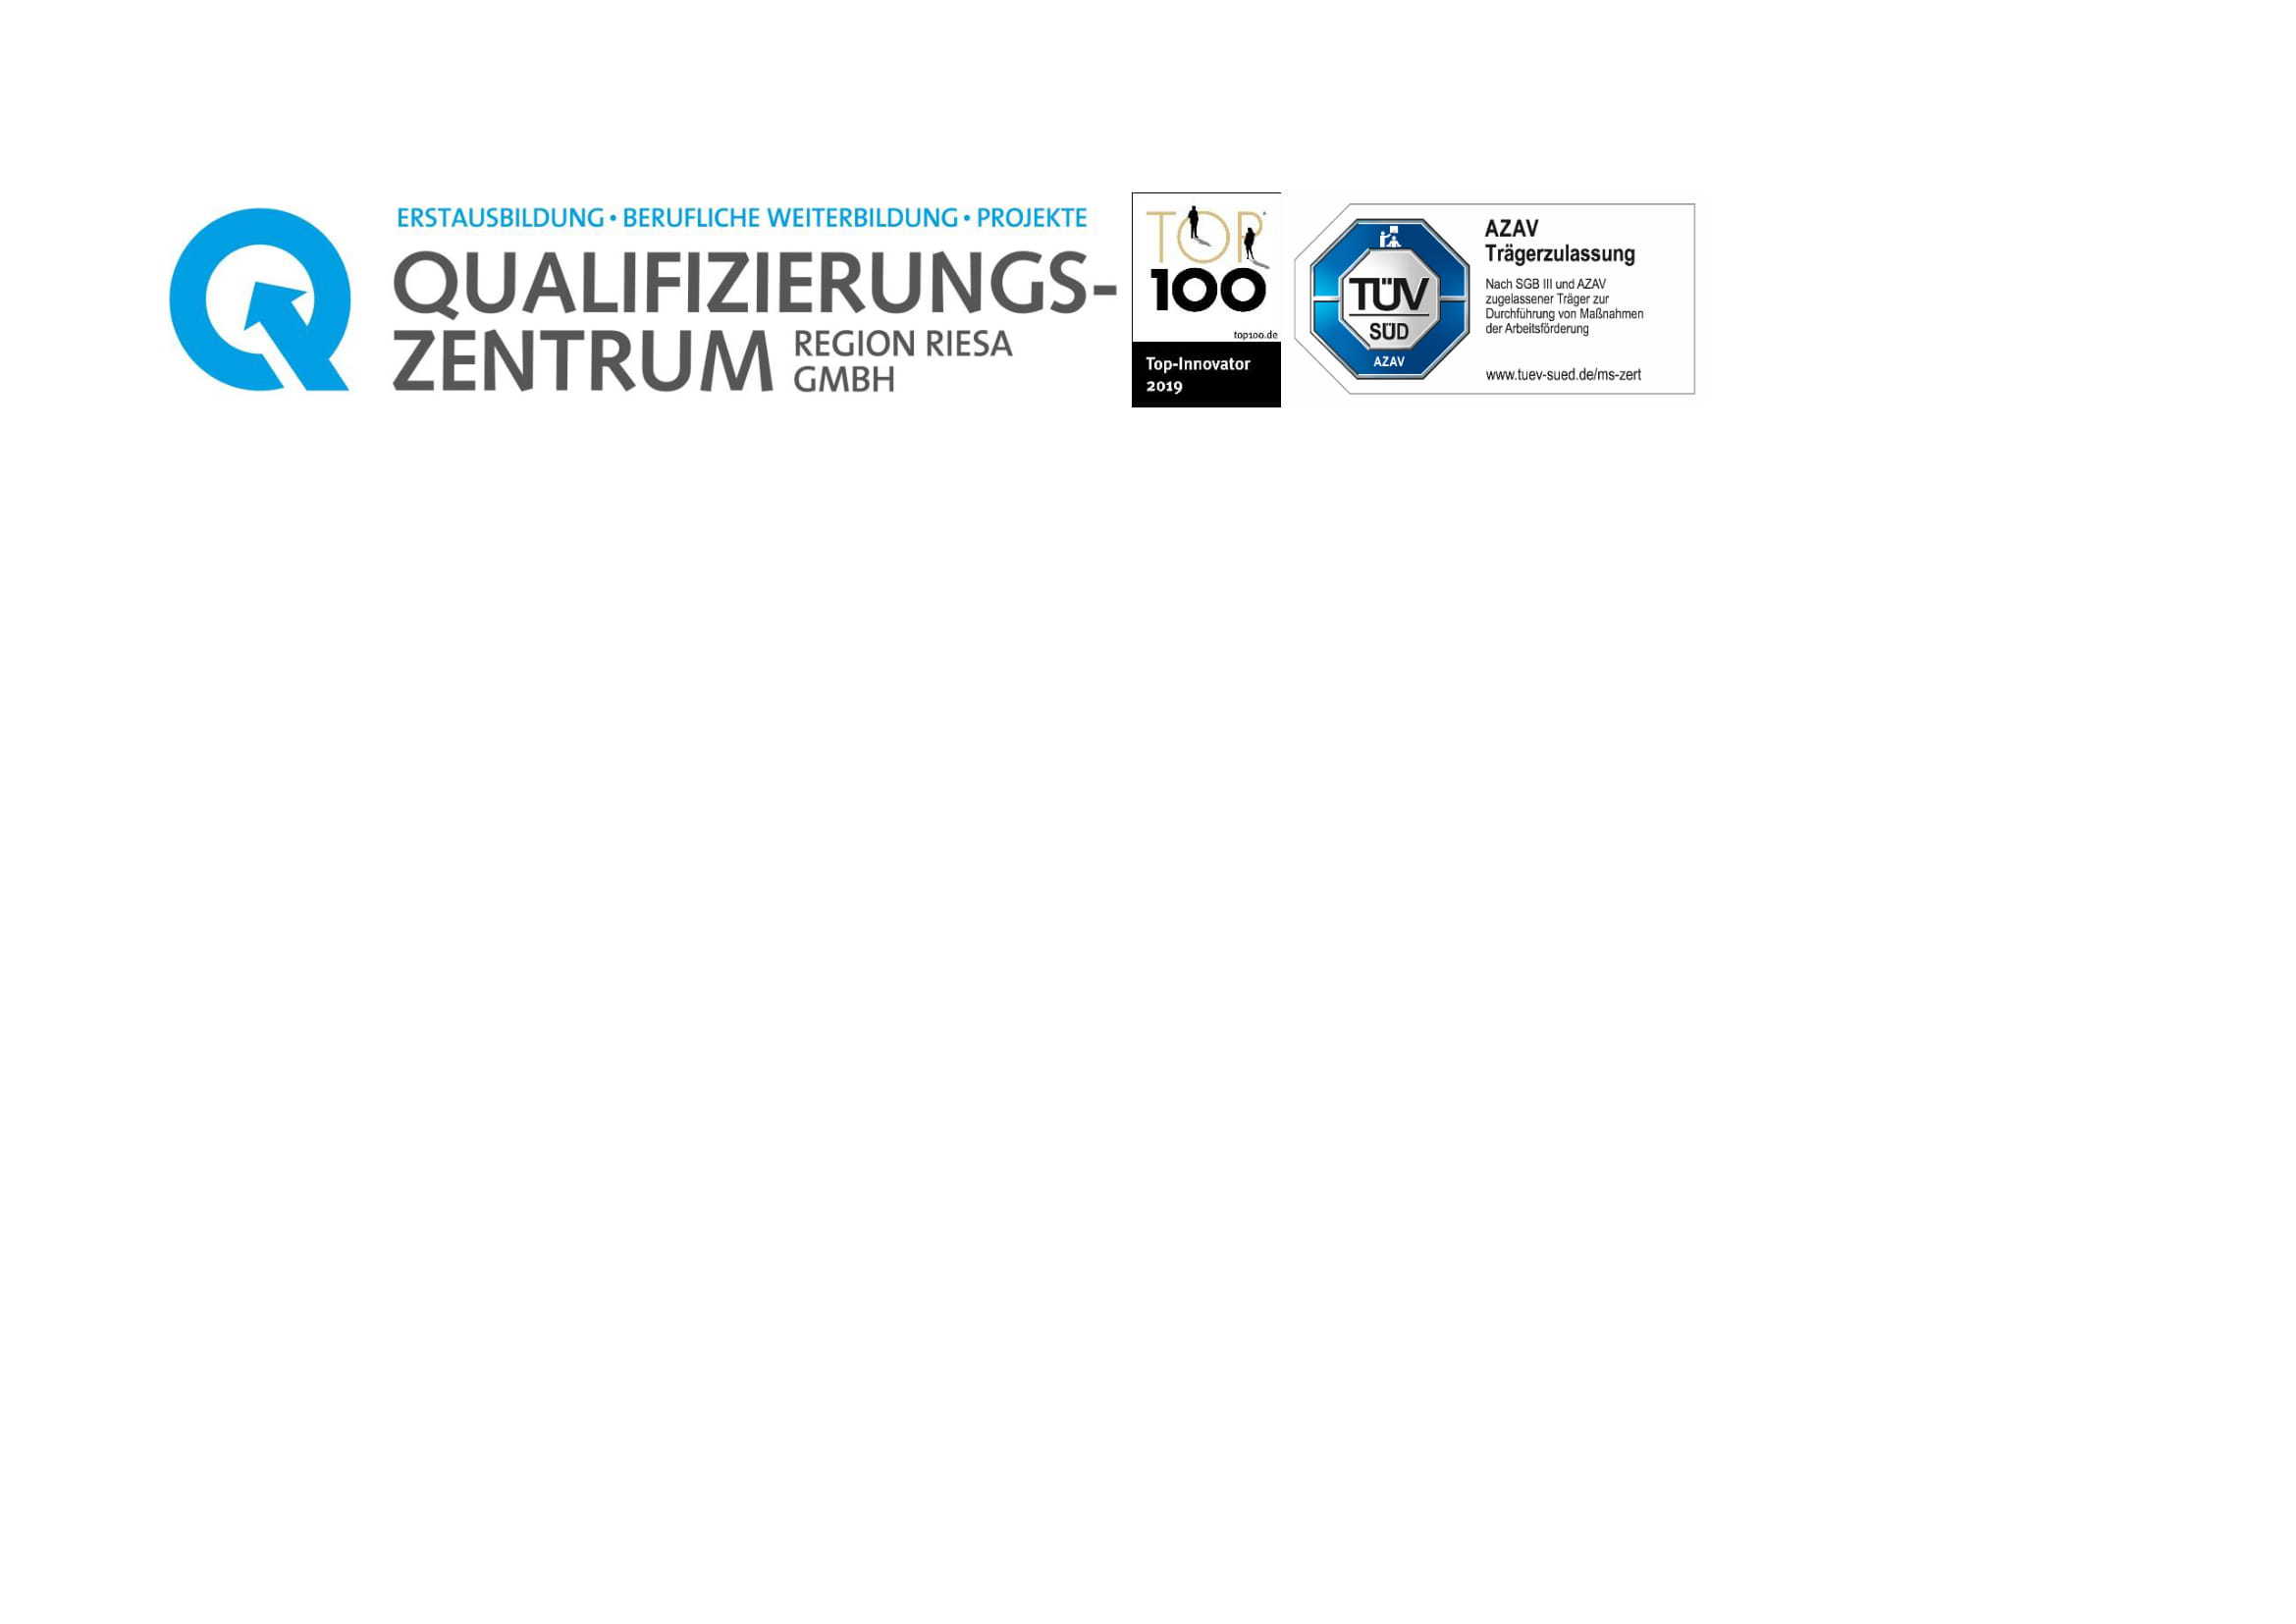 Qualifizierungszentrum Region Riesa GmbH